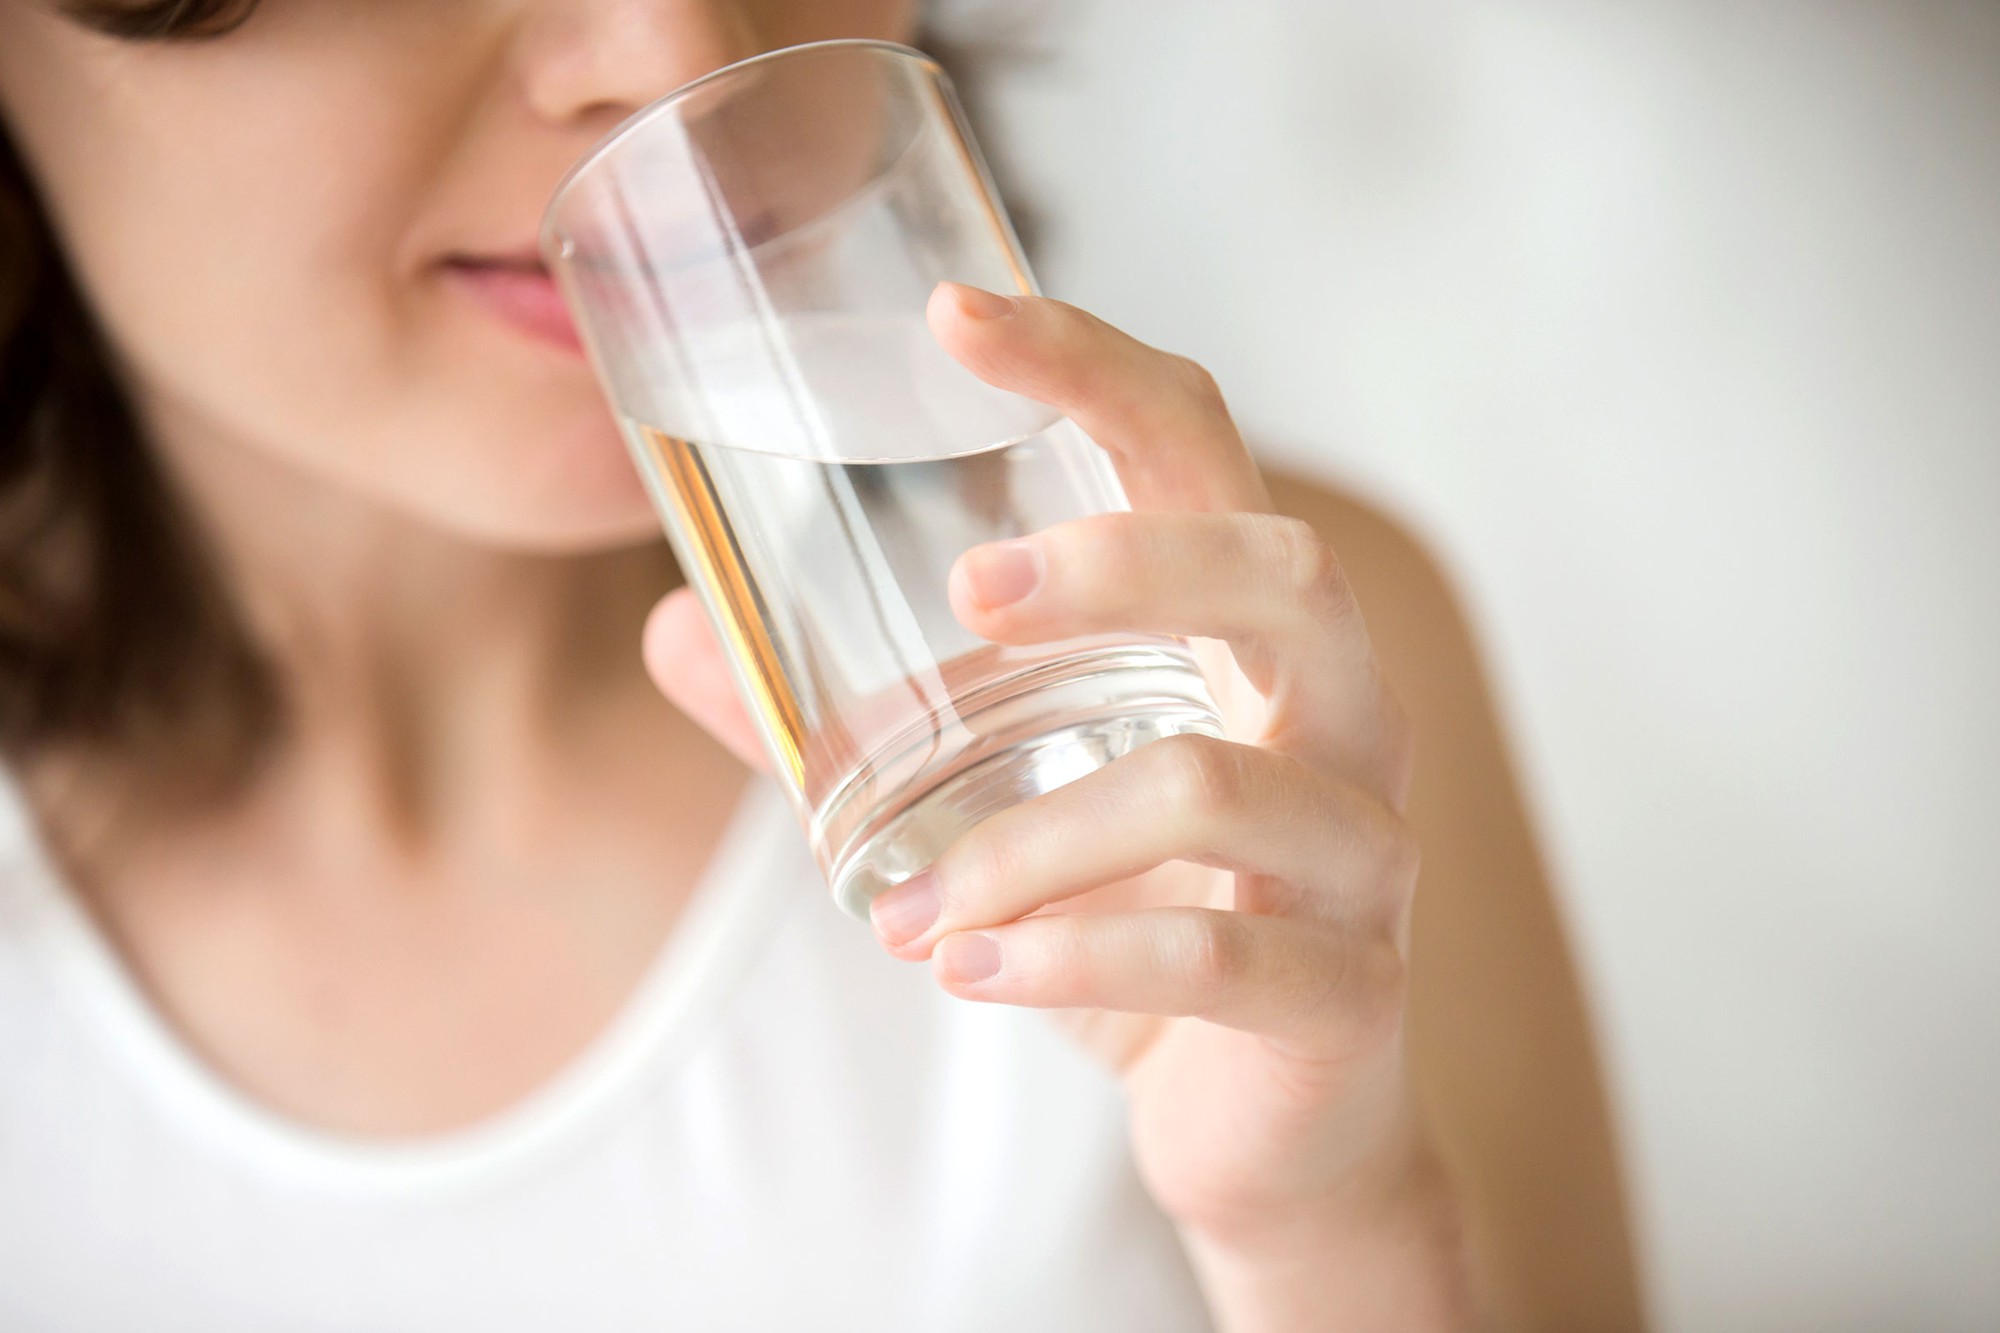   Uống đủ nước là cách tốt nhất để giúp làn môi giữ ẩm và mềm mịn  